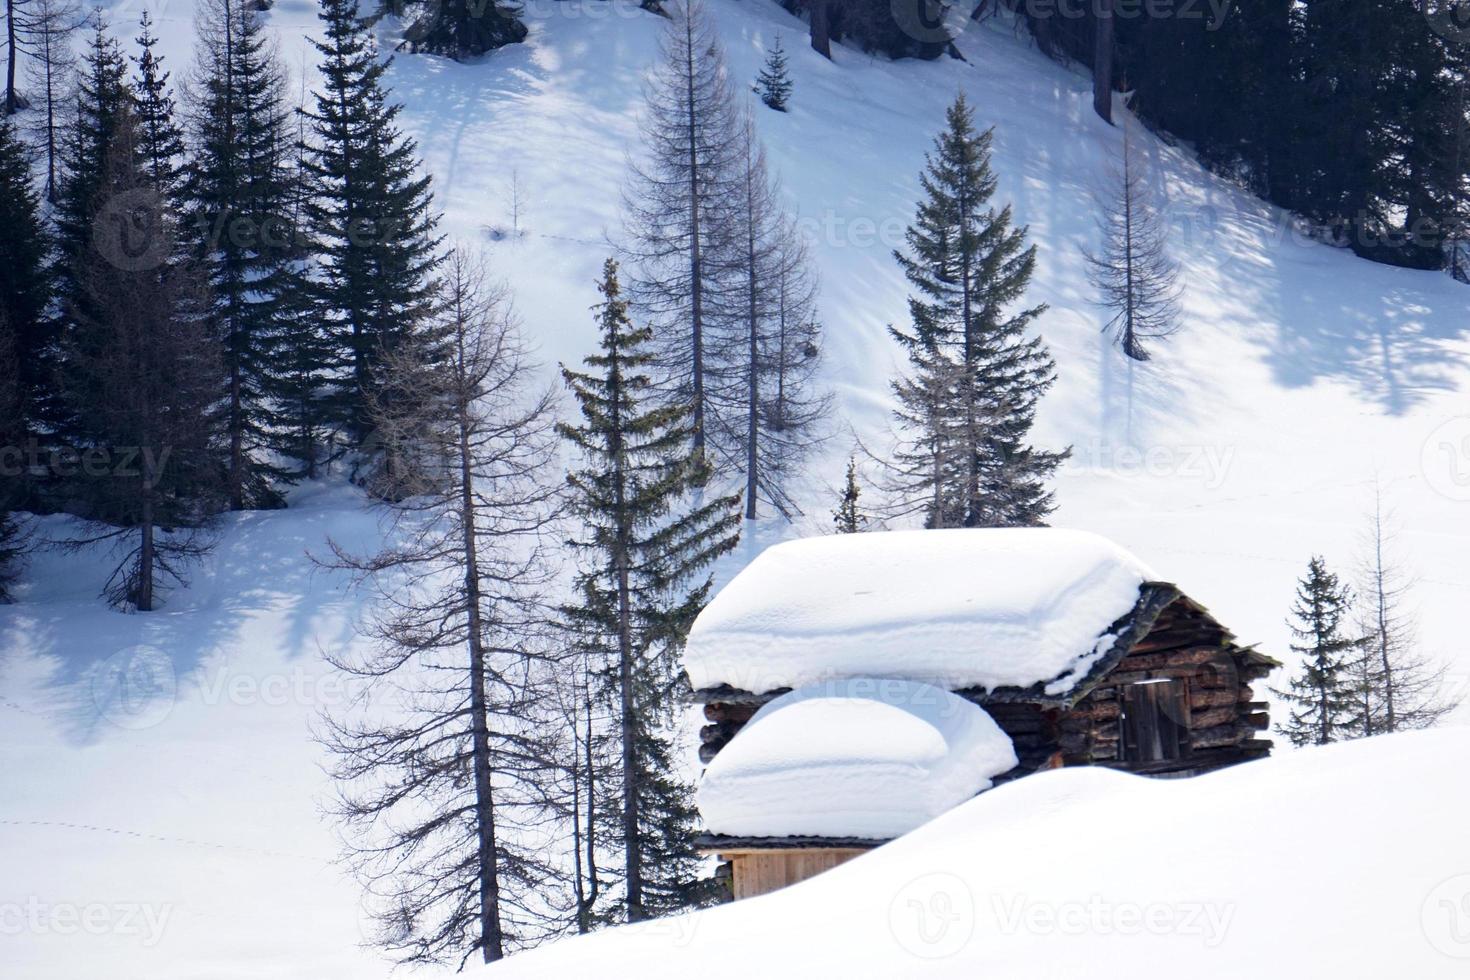 cabana de madeira no fundo da neve do inverno foto